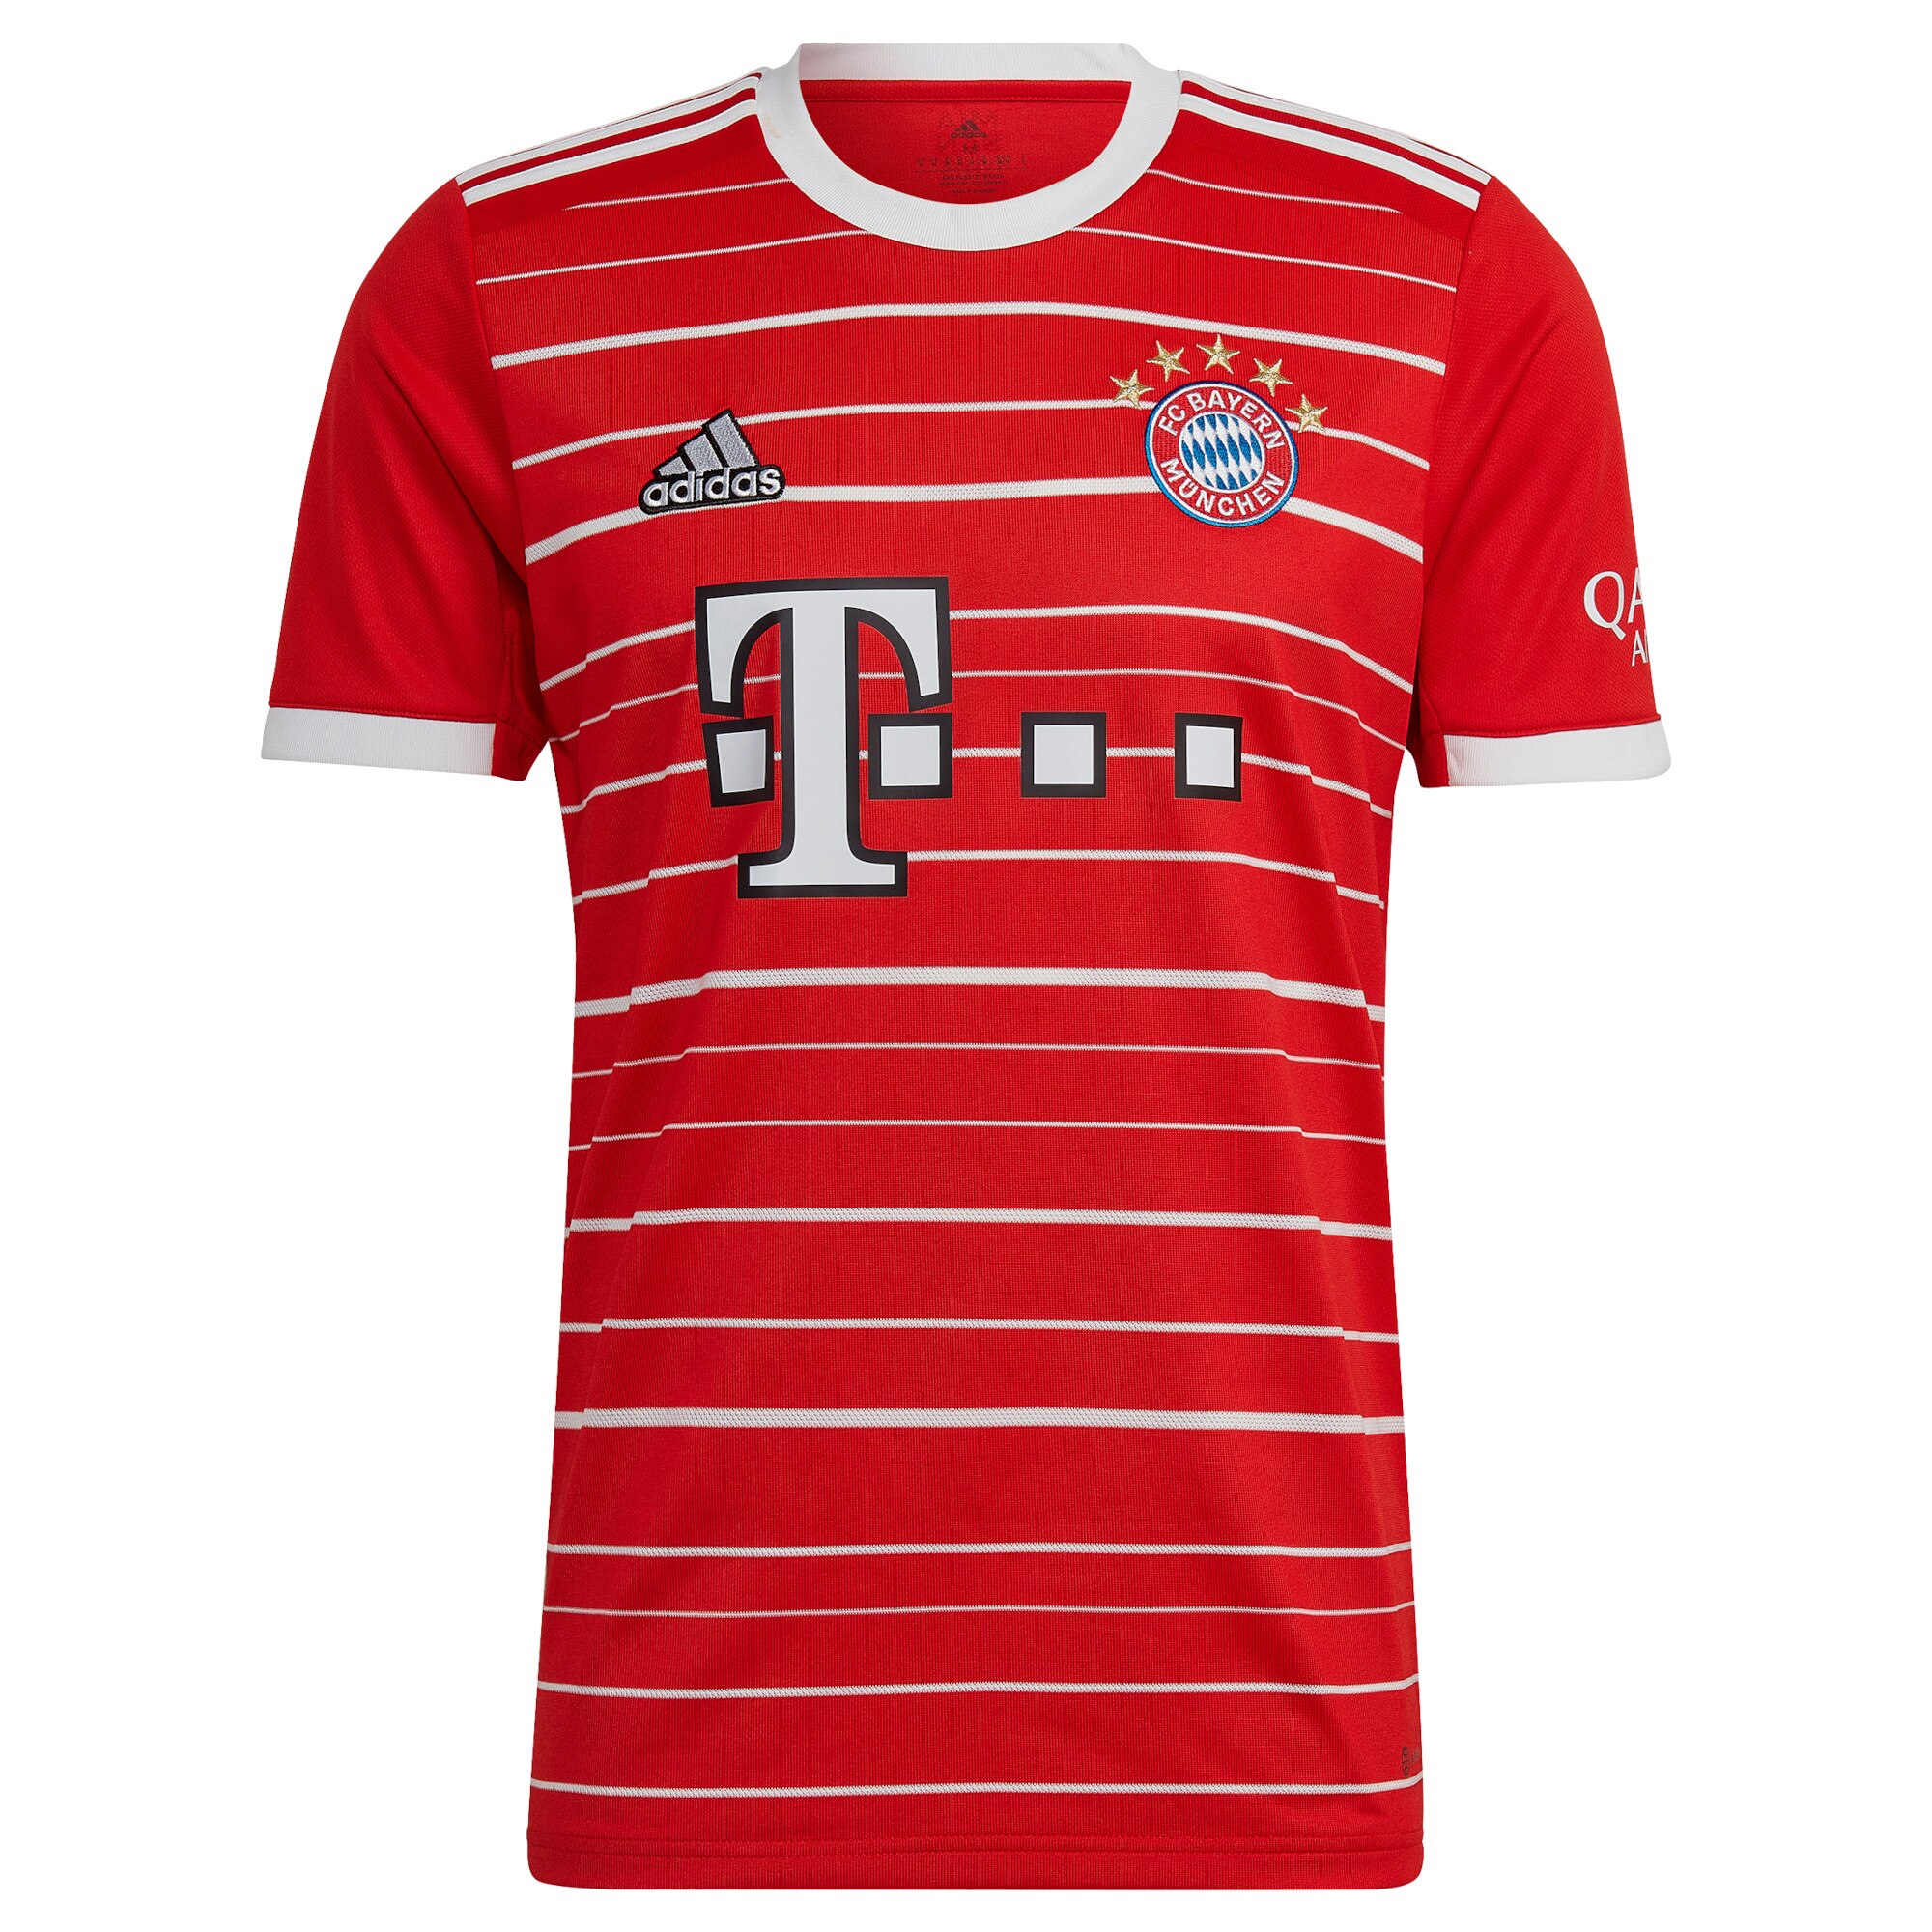 FC Bayern Home Shirt 2022-23 with Pavard 5 printing